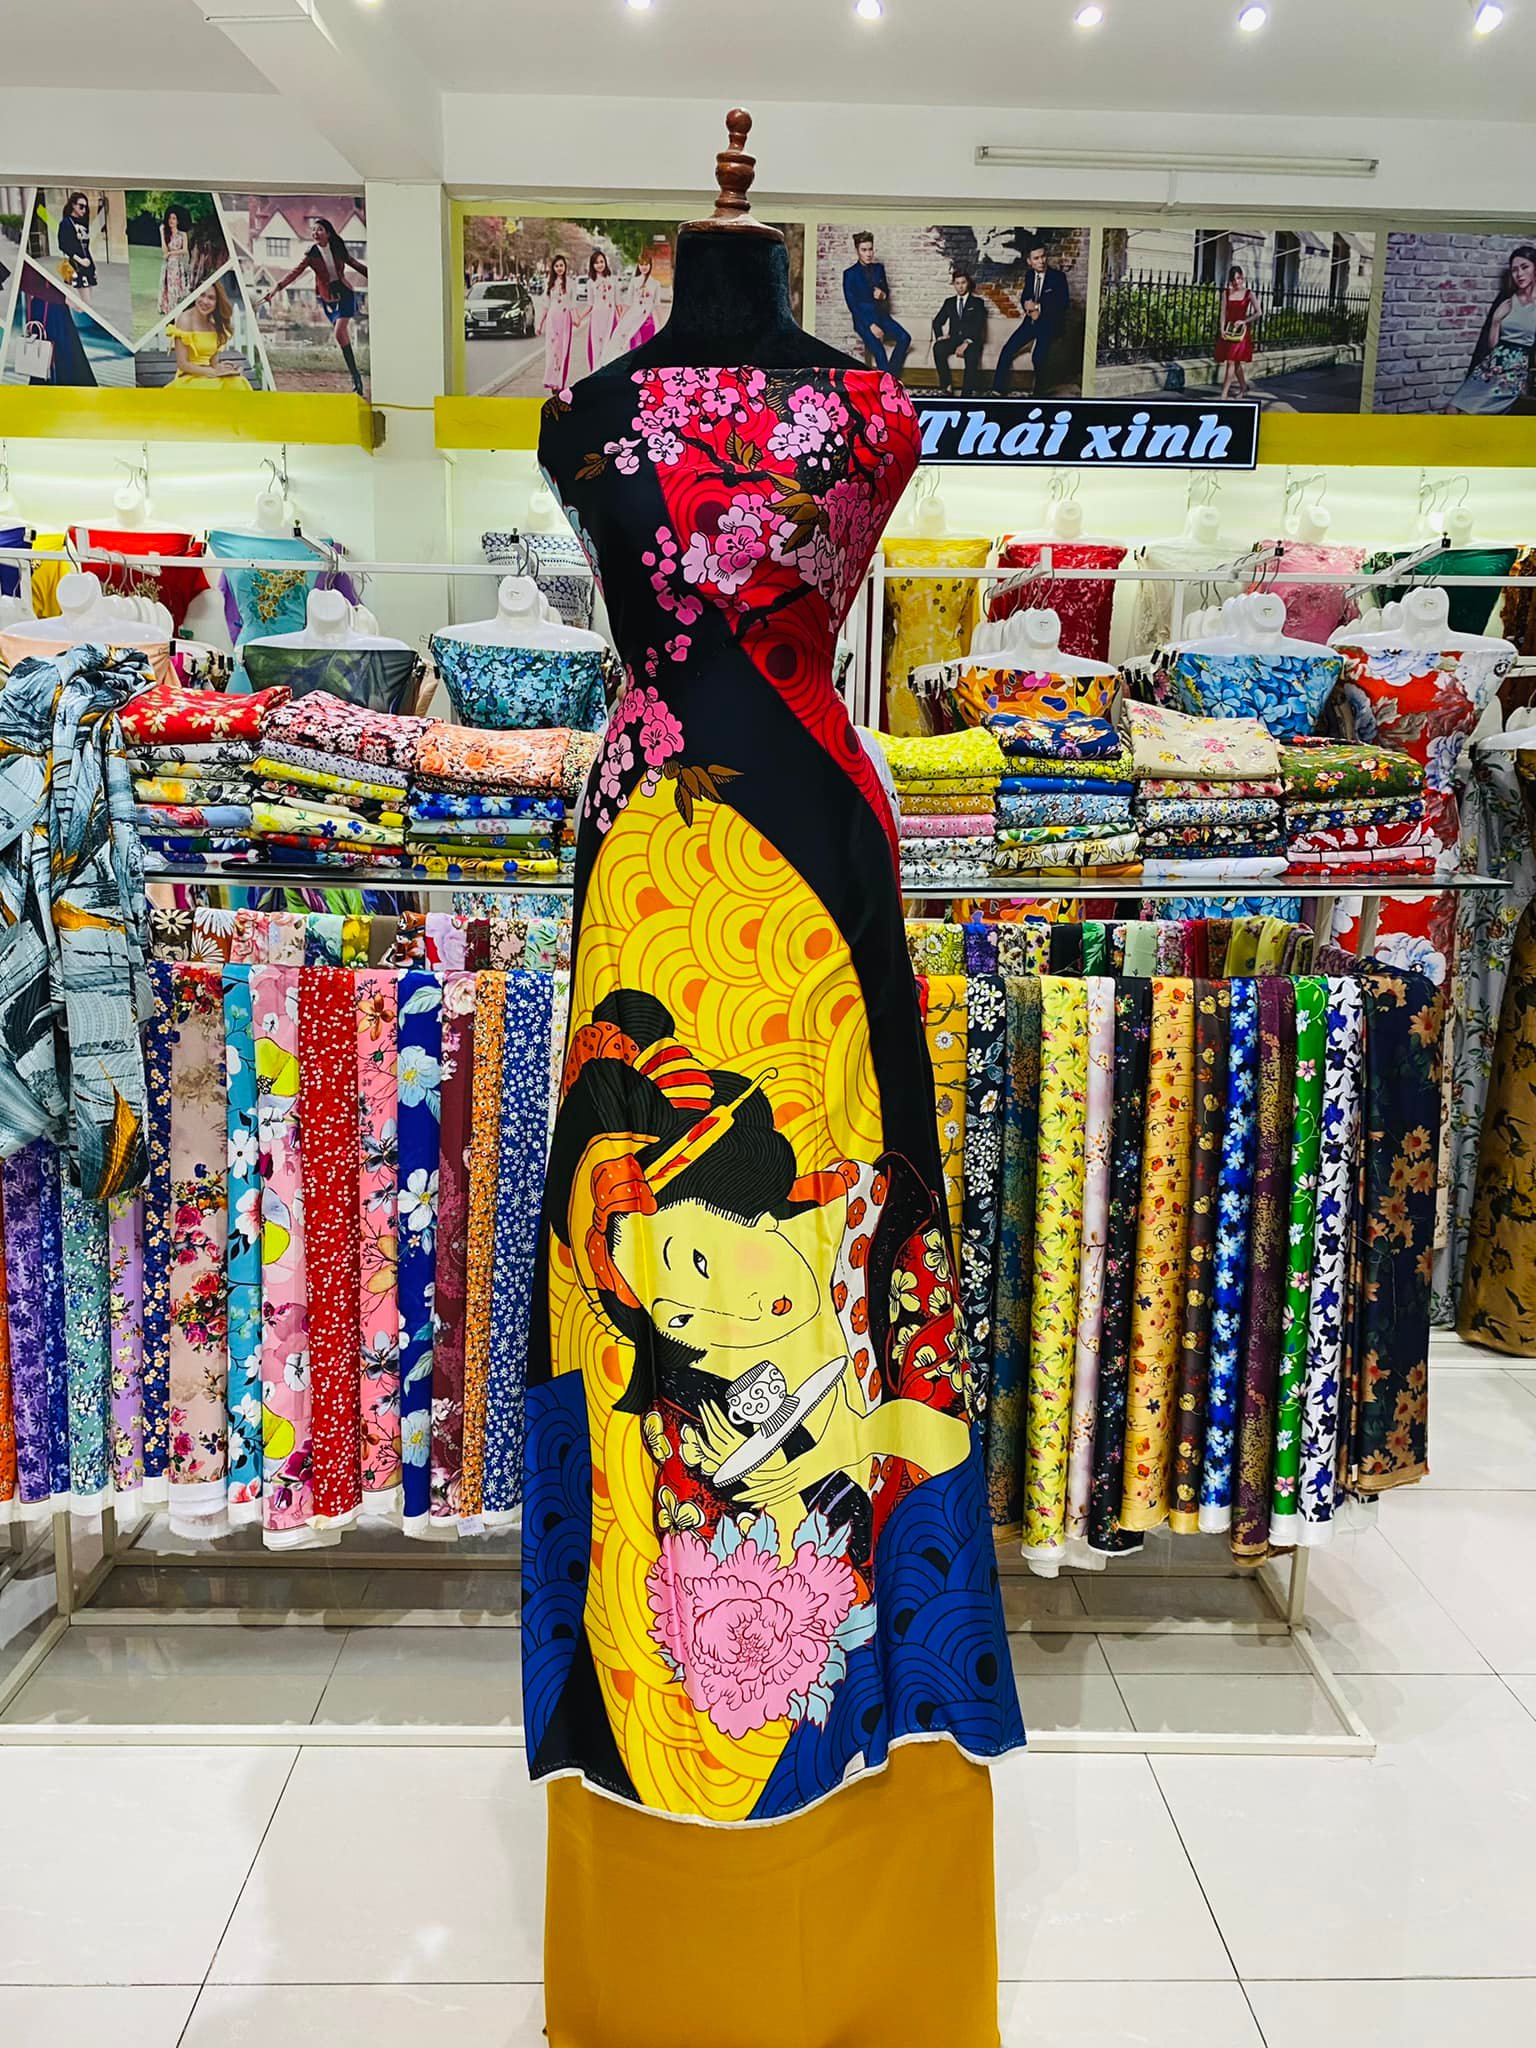 Shop vải Thái Xinh ảnh 2